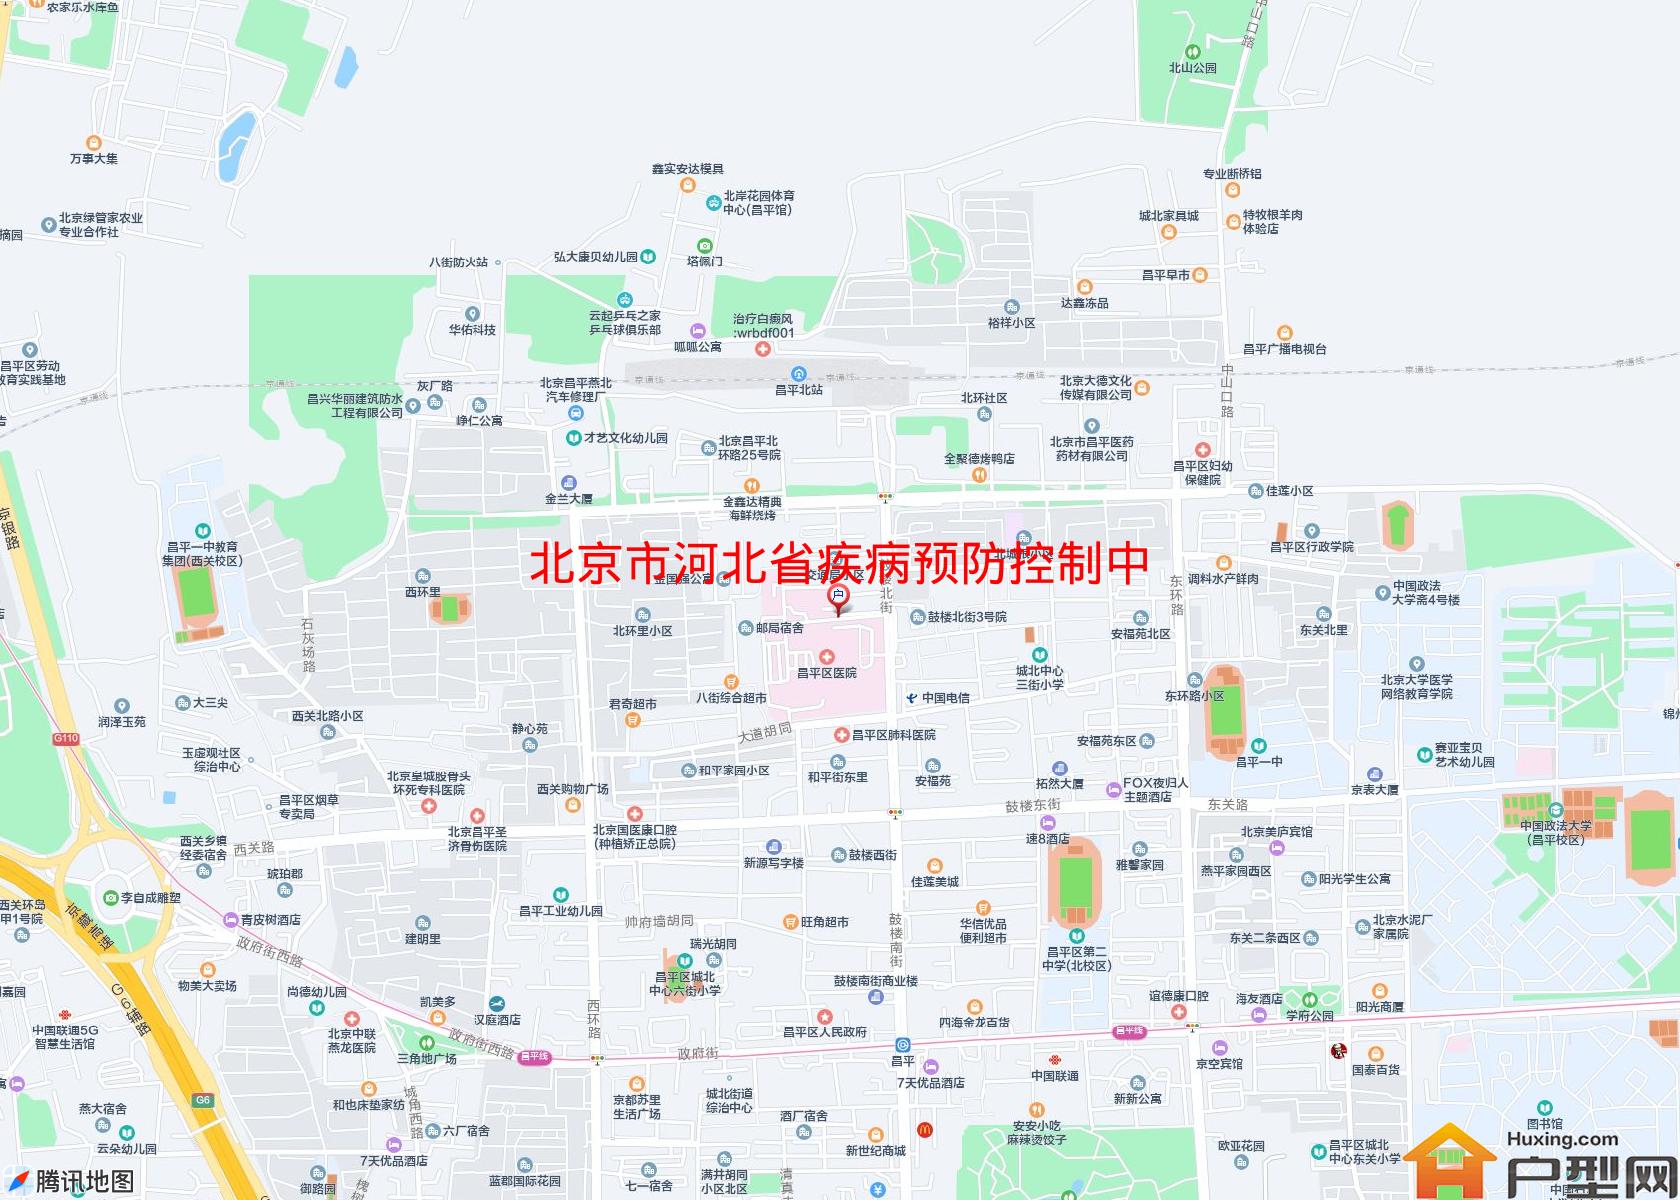 河北省疾病预防控制中心小区 - 户型网